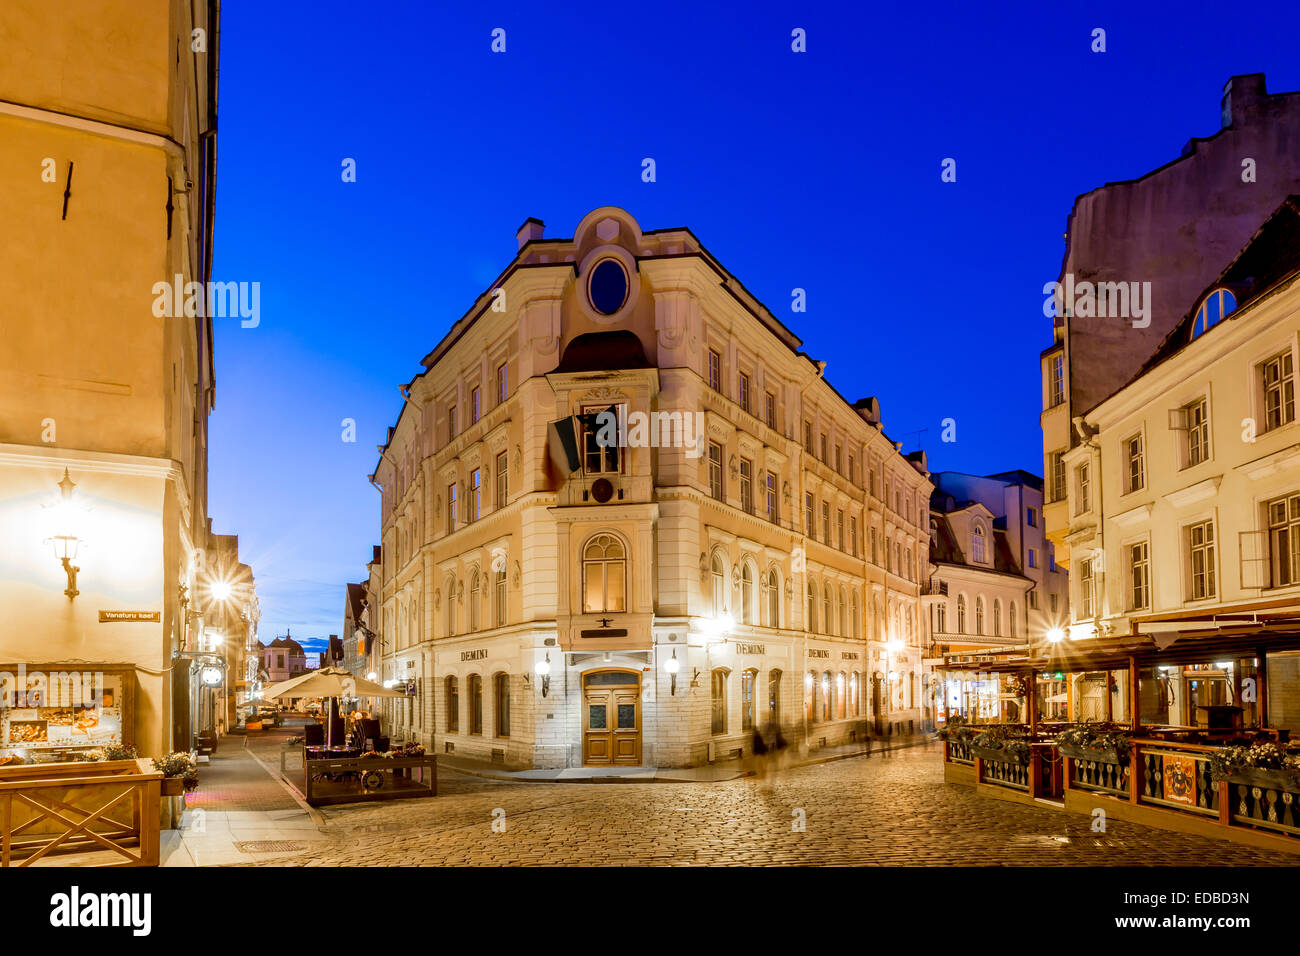 Vieille place ou Varna trug dans la vieille ville de nuit, Tallinn, Estonie Banque D'Images